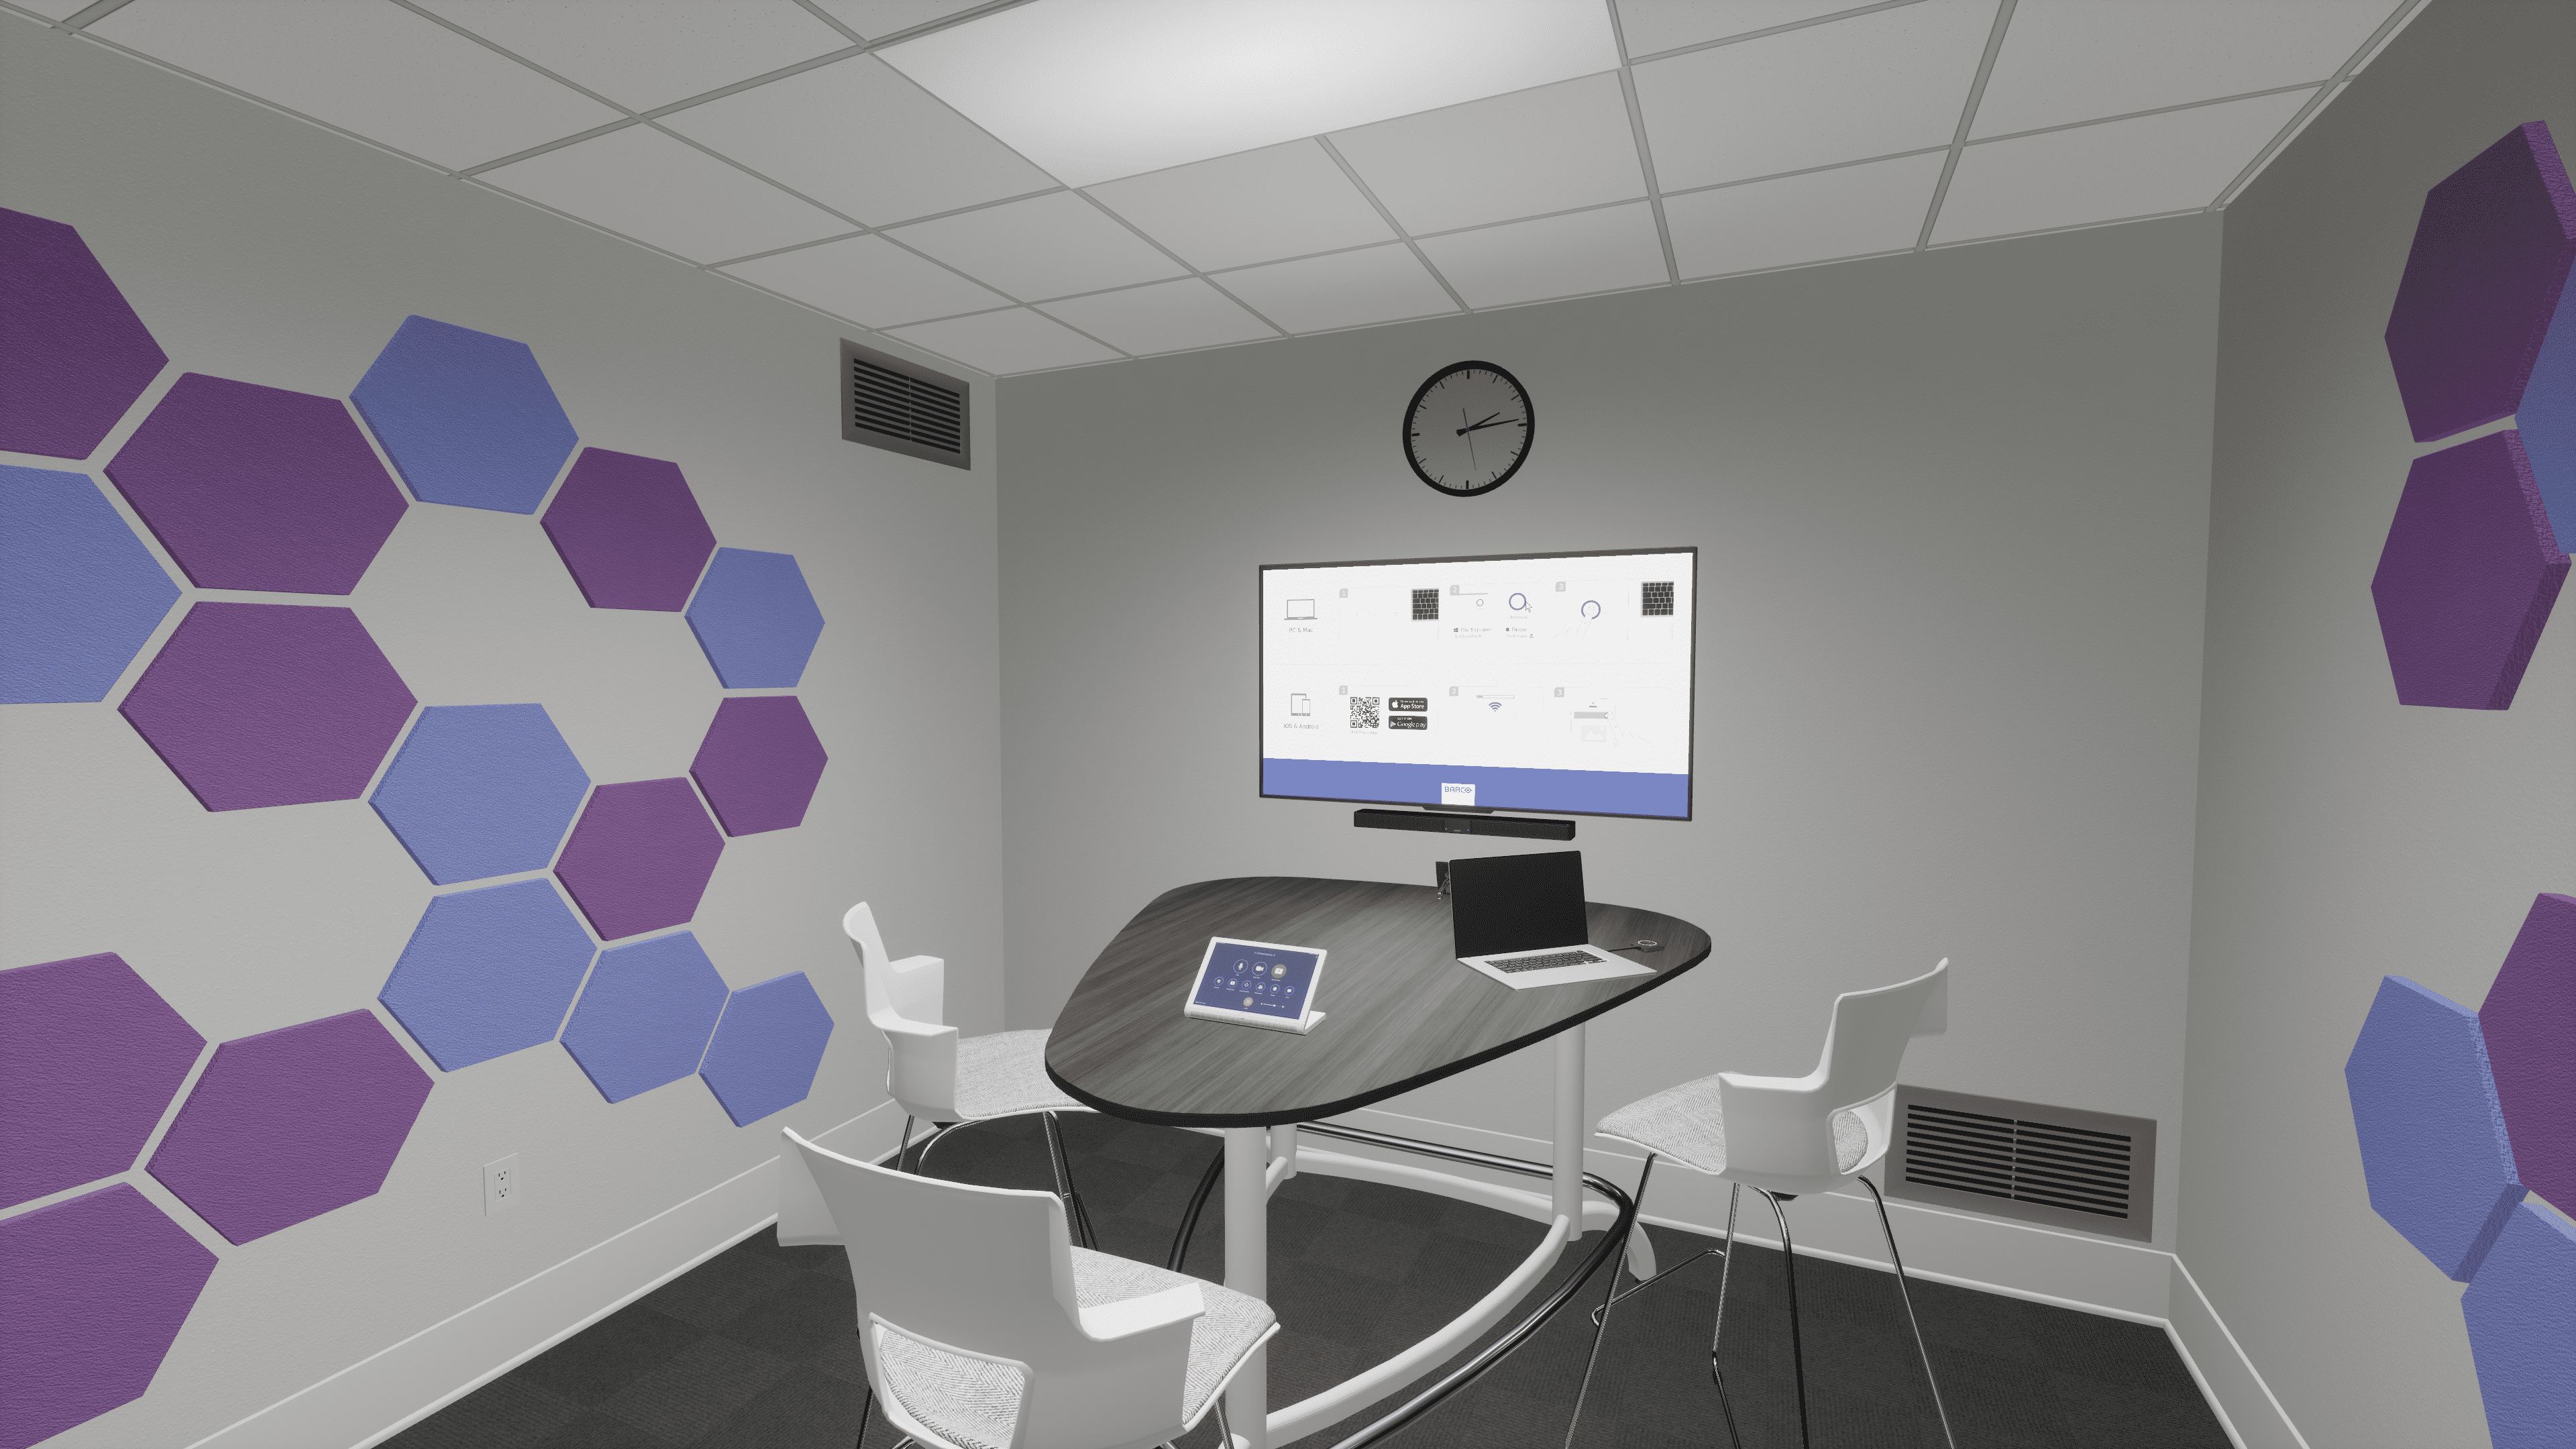 VR reference designs huddle room